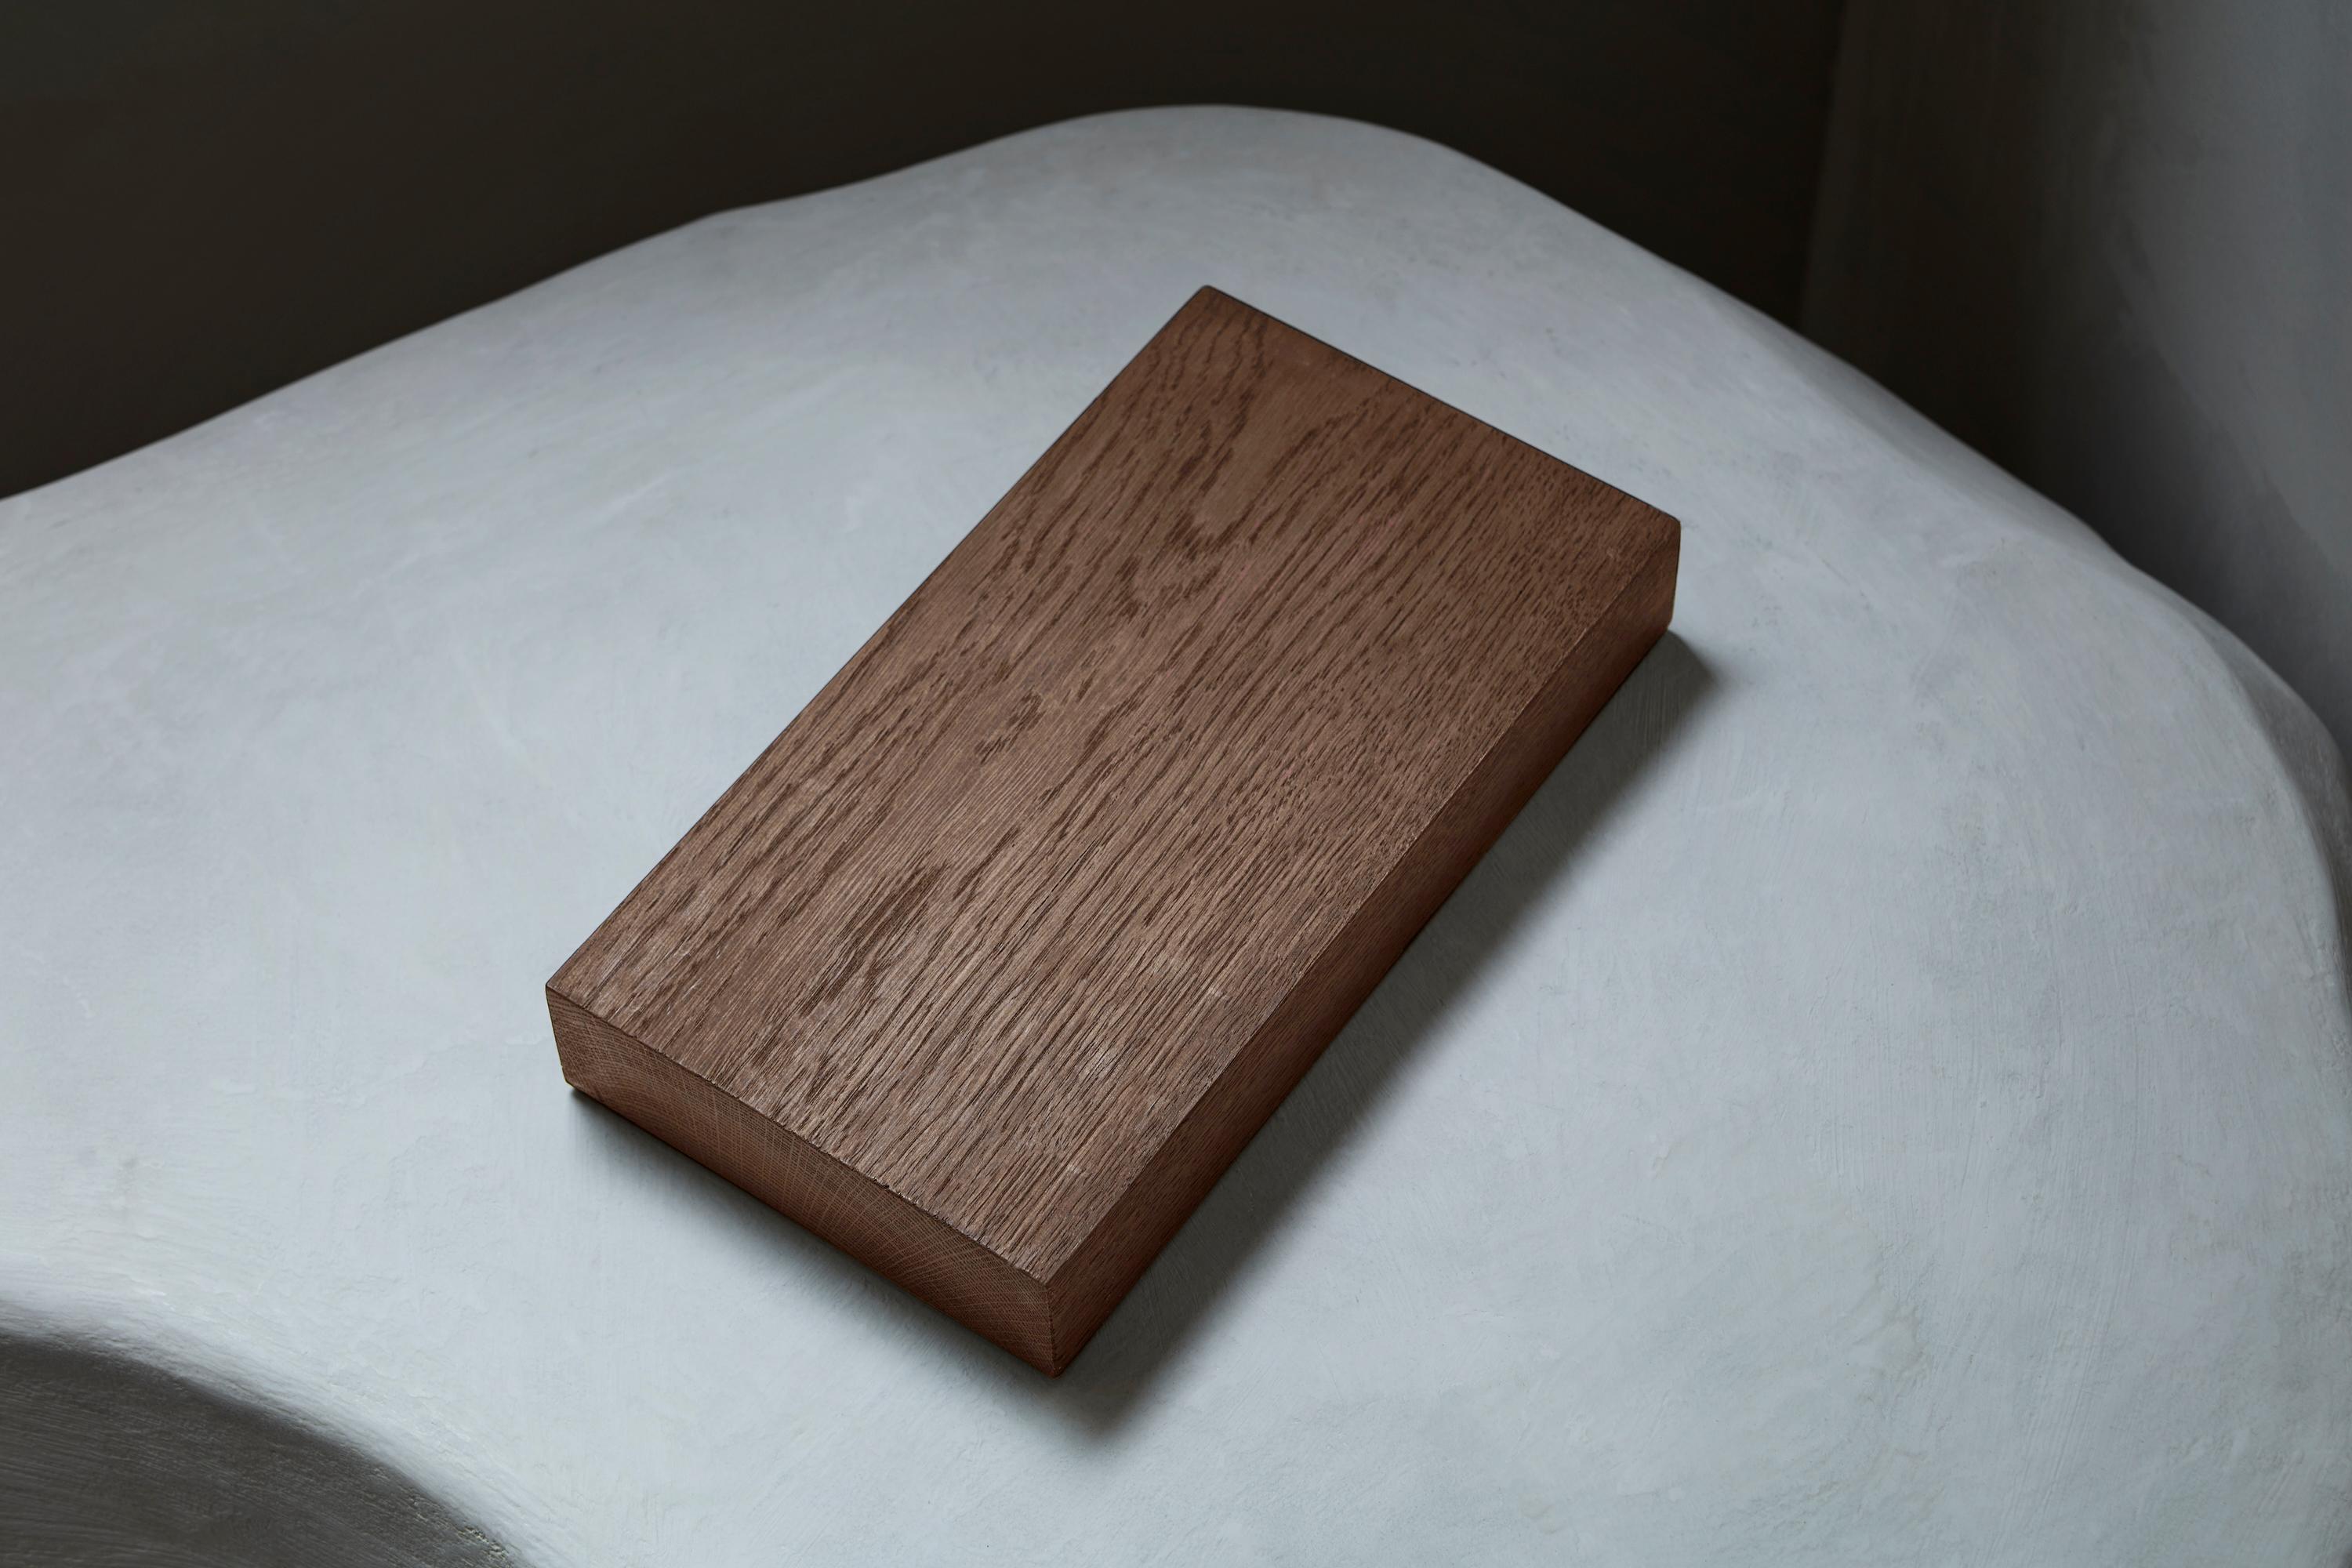 Sculptural Solid Oak Wooden Brut Dining Table - Black For Sale 2